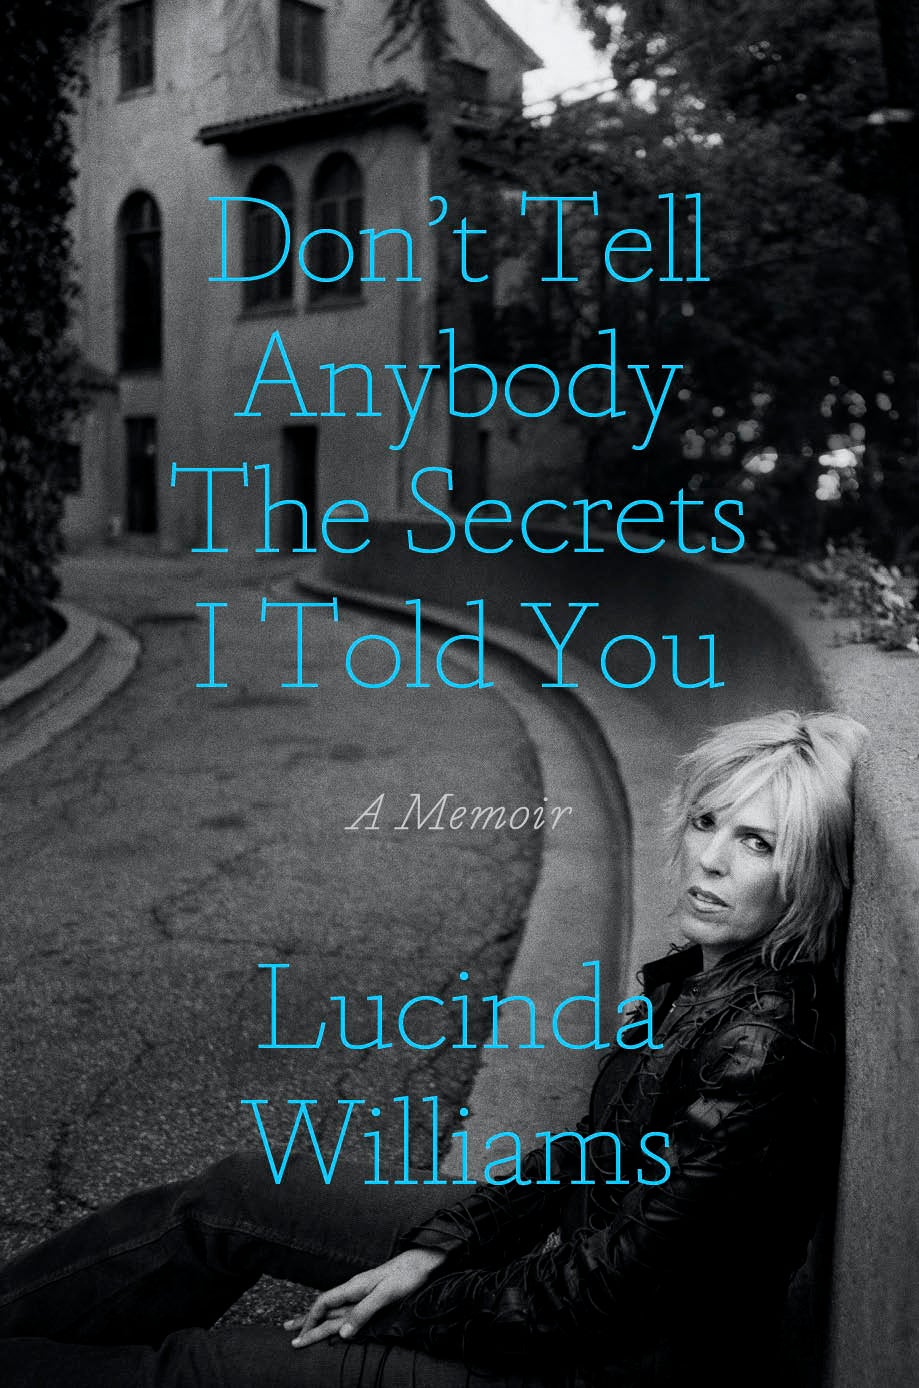 Lucinda Williams reveals her family’s deepest secrets in her new memoir